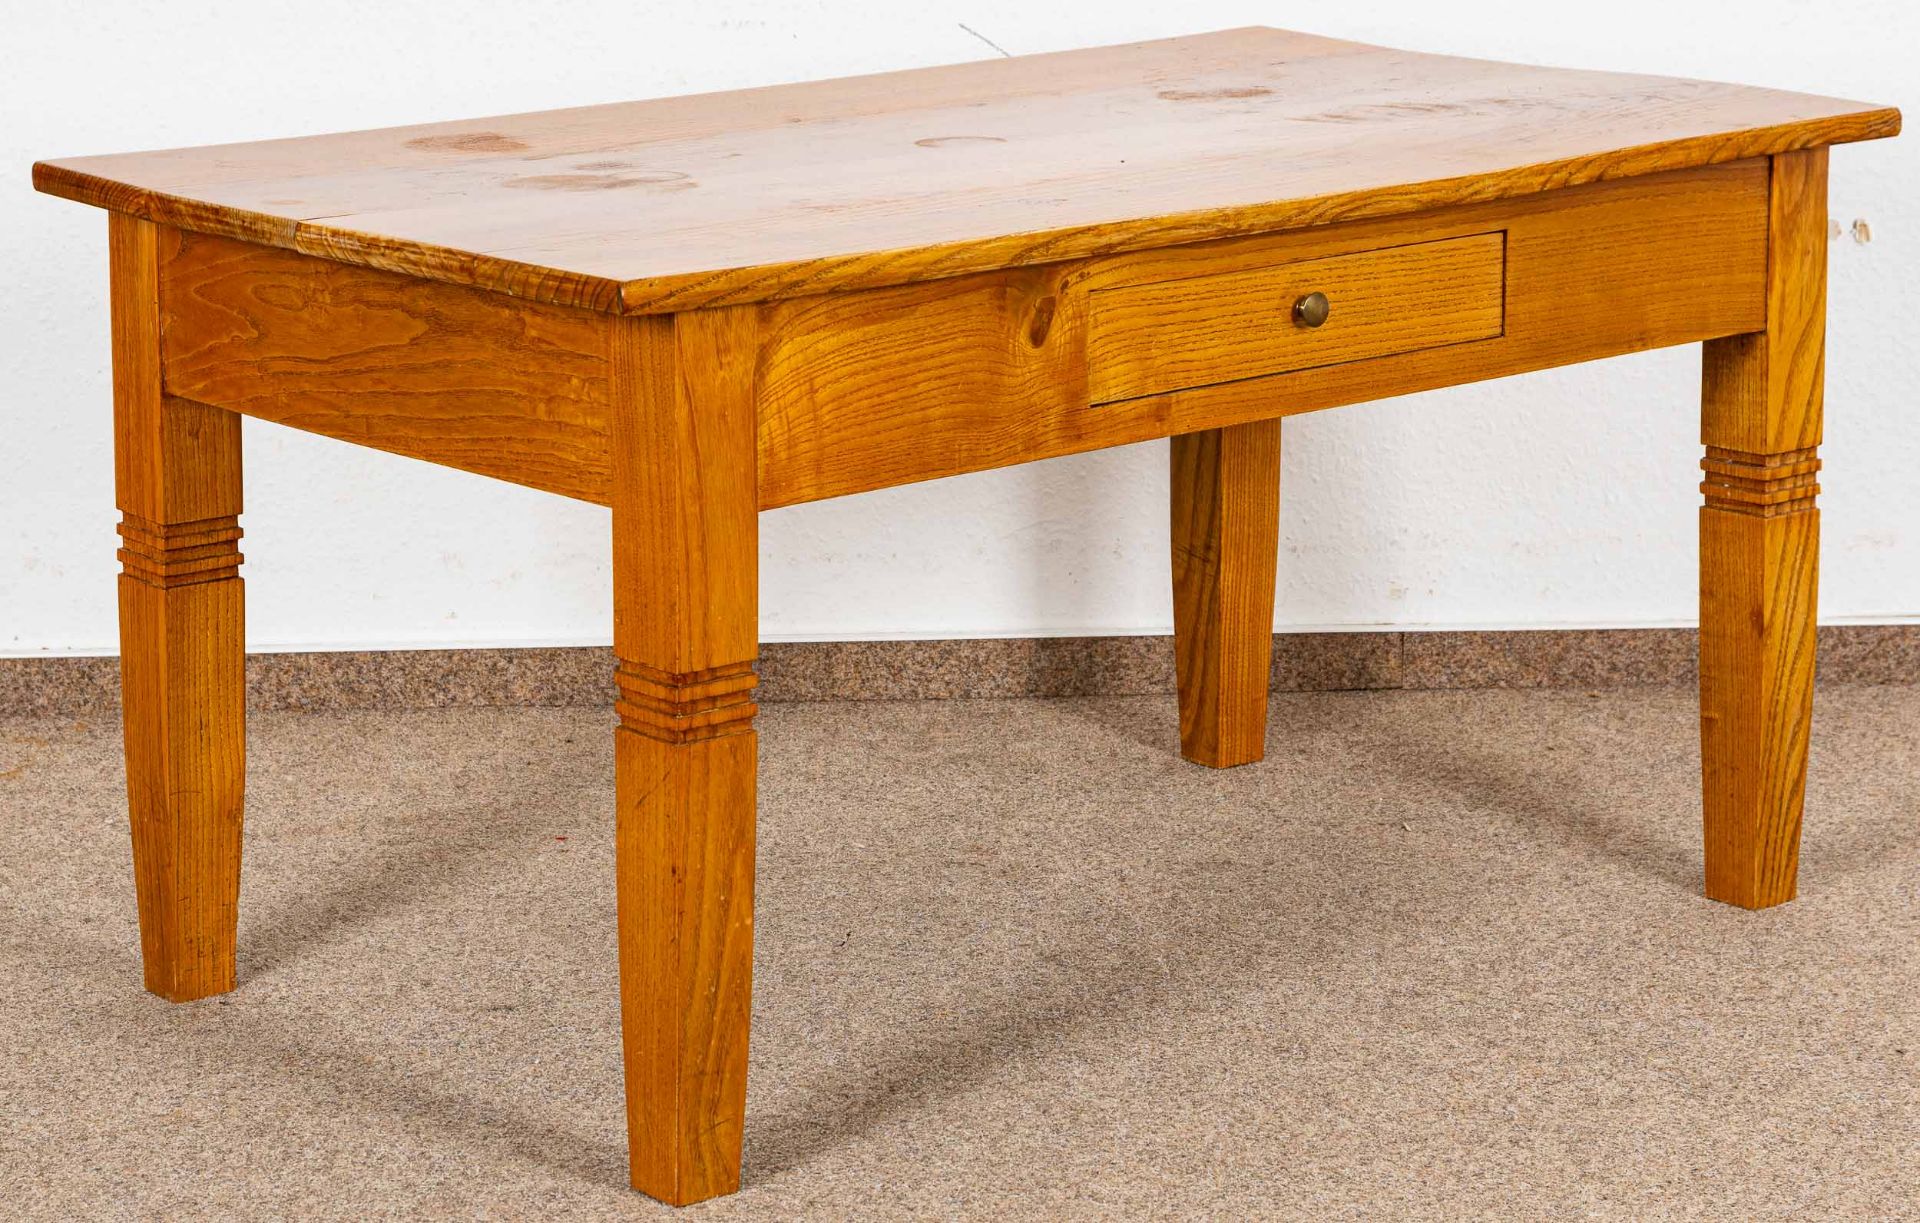 Sofatisch/Couchtisch, Esche, nach klassischem Vorbild  Ende des 20. Jhdts. gefertigter Tisch. Schwe